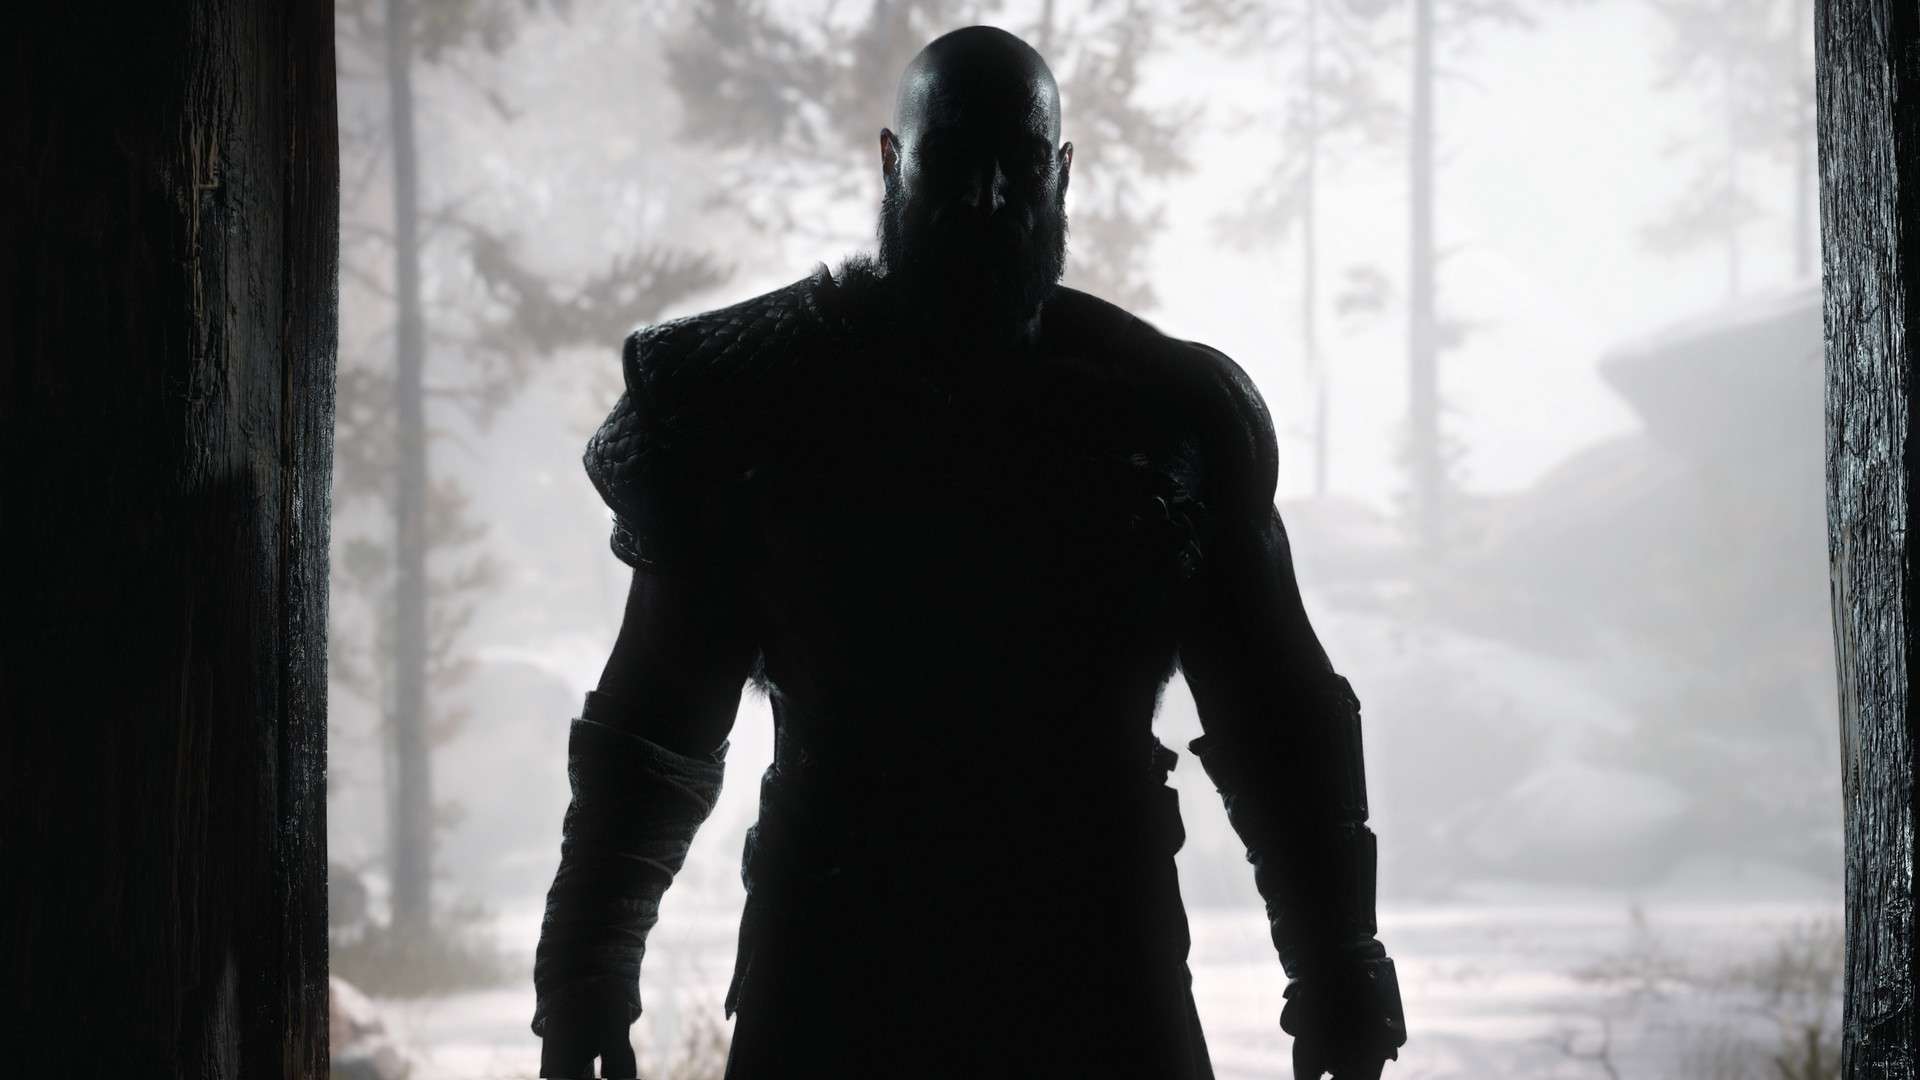 High on Life DLC Trailer Teases Dark Horror Setting